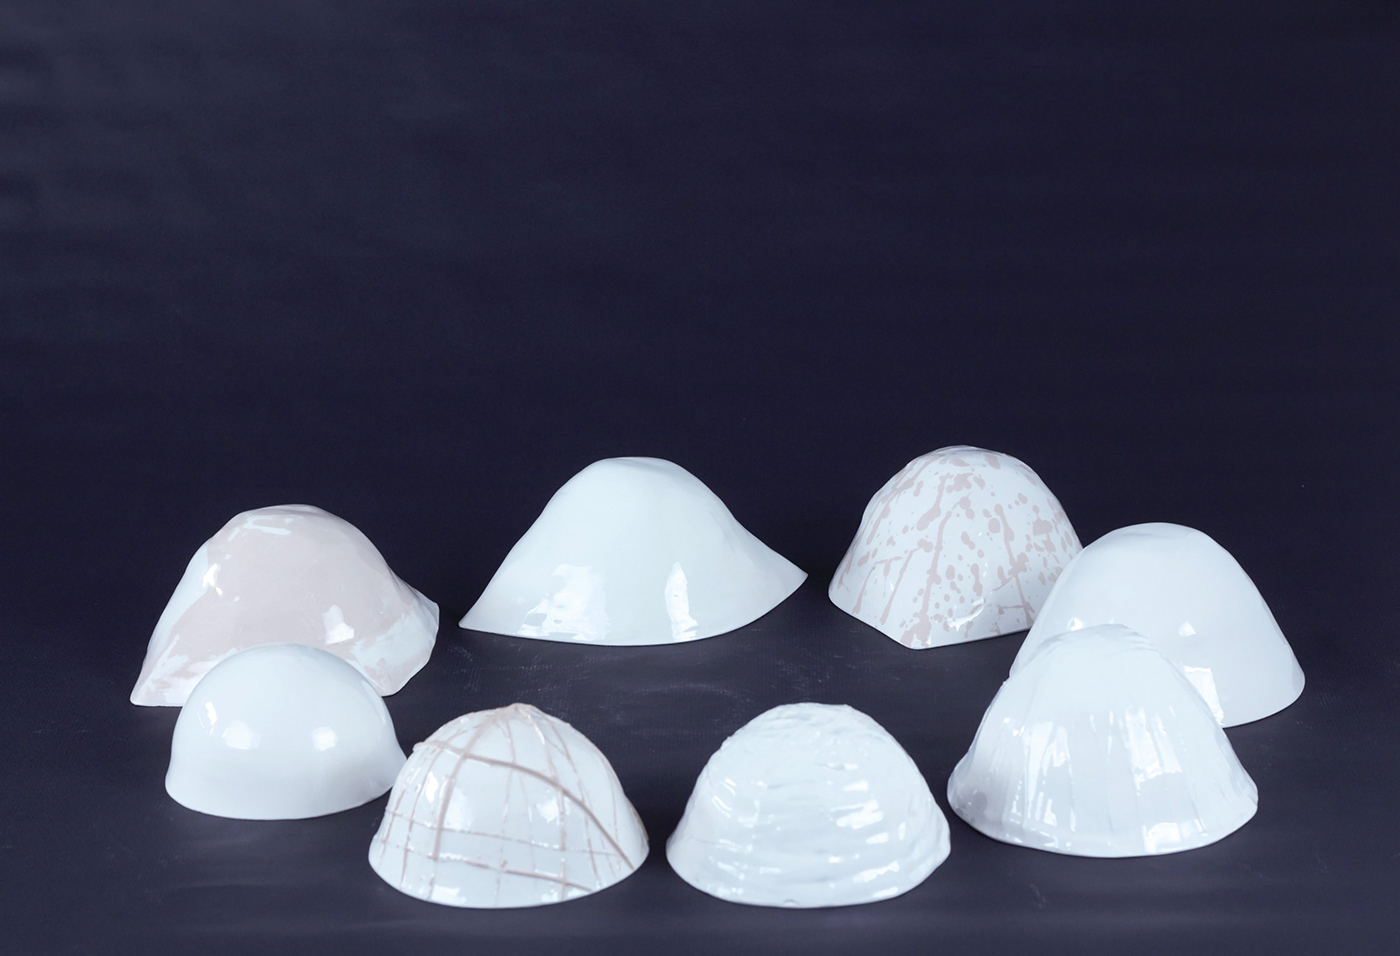 ceramica design industrial esculpir gesso gesso molde molde de gesso plaster reuse reutilize subtração